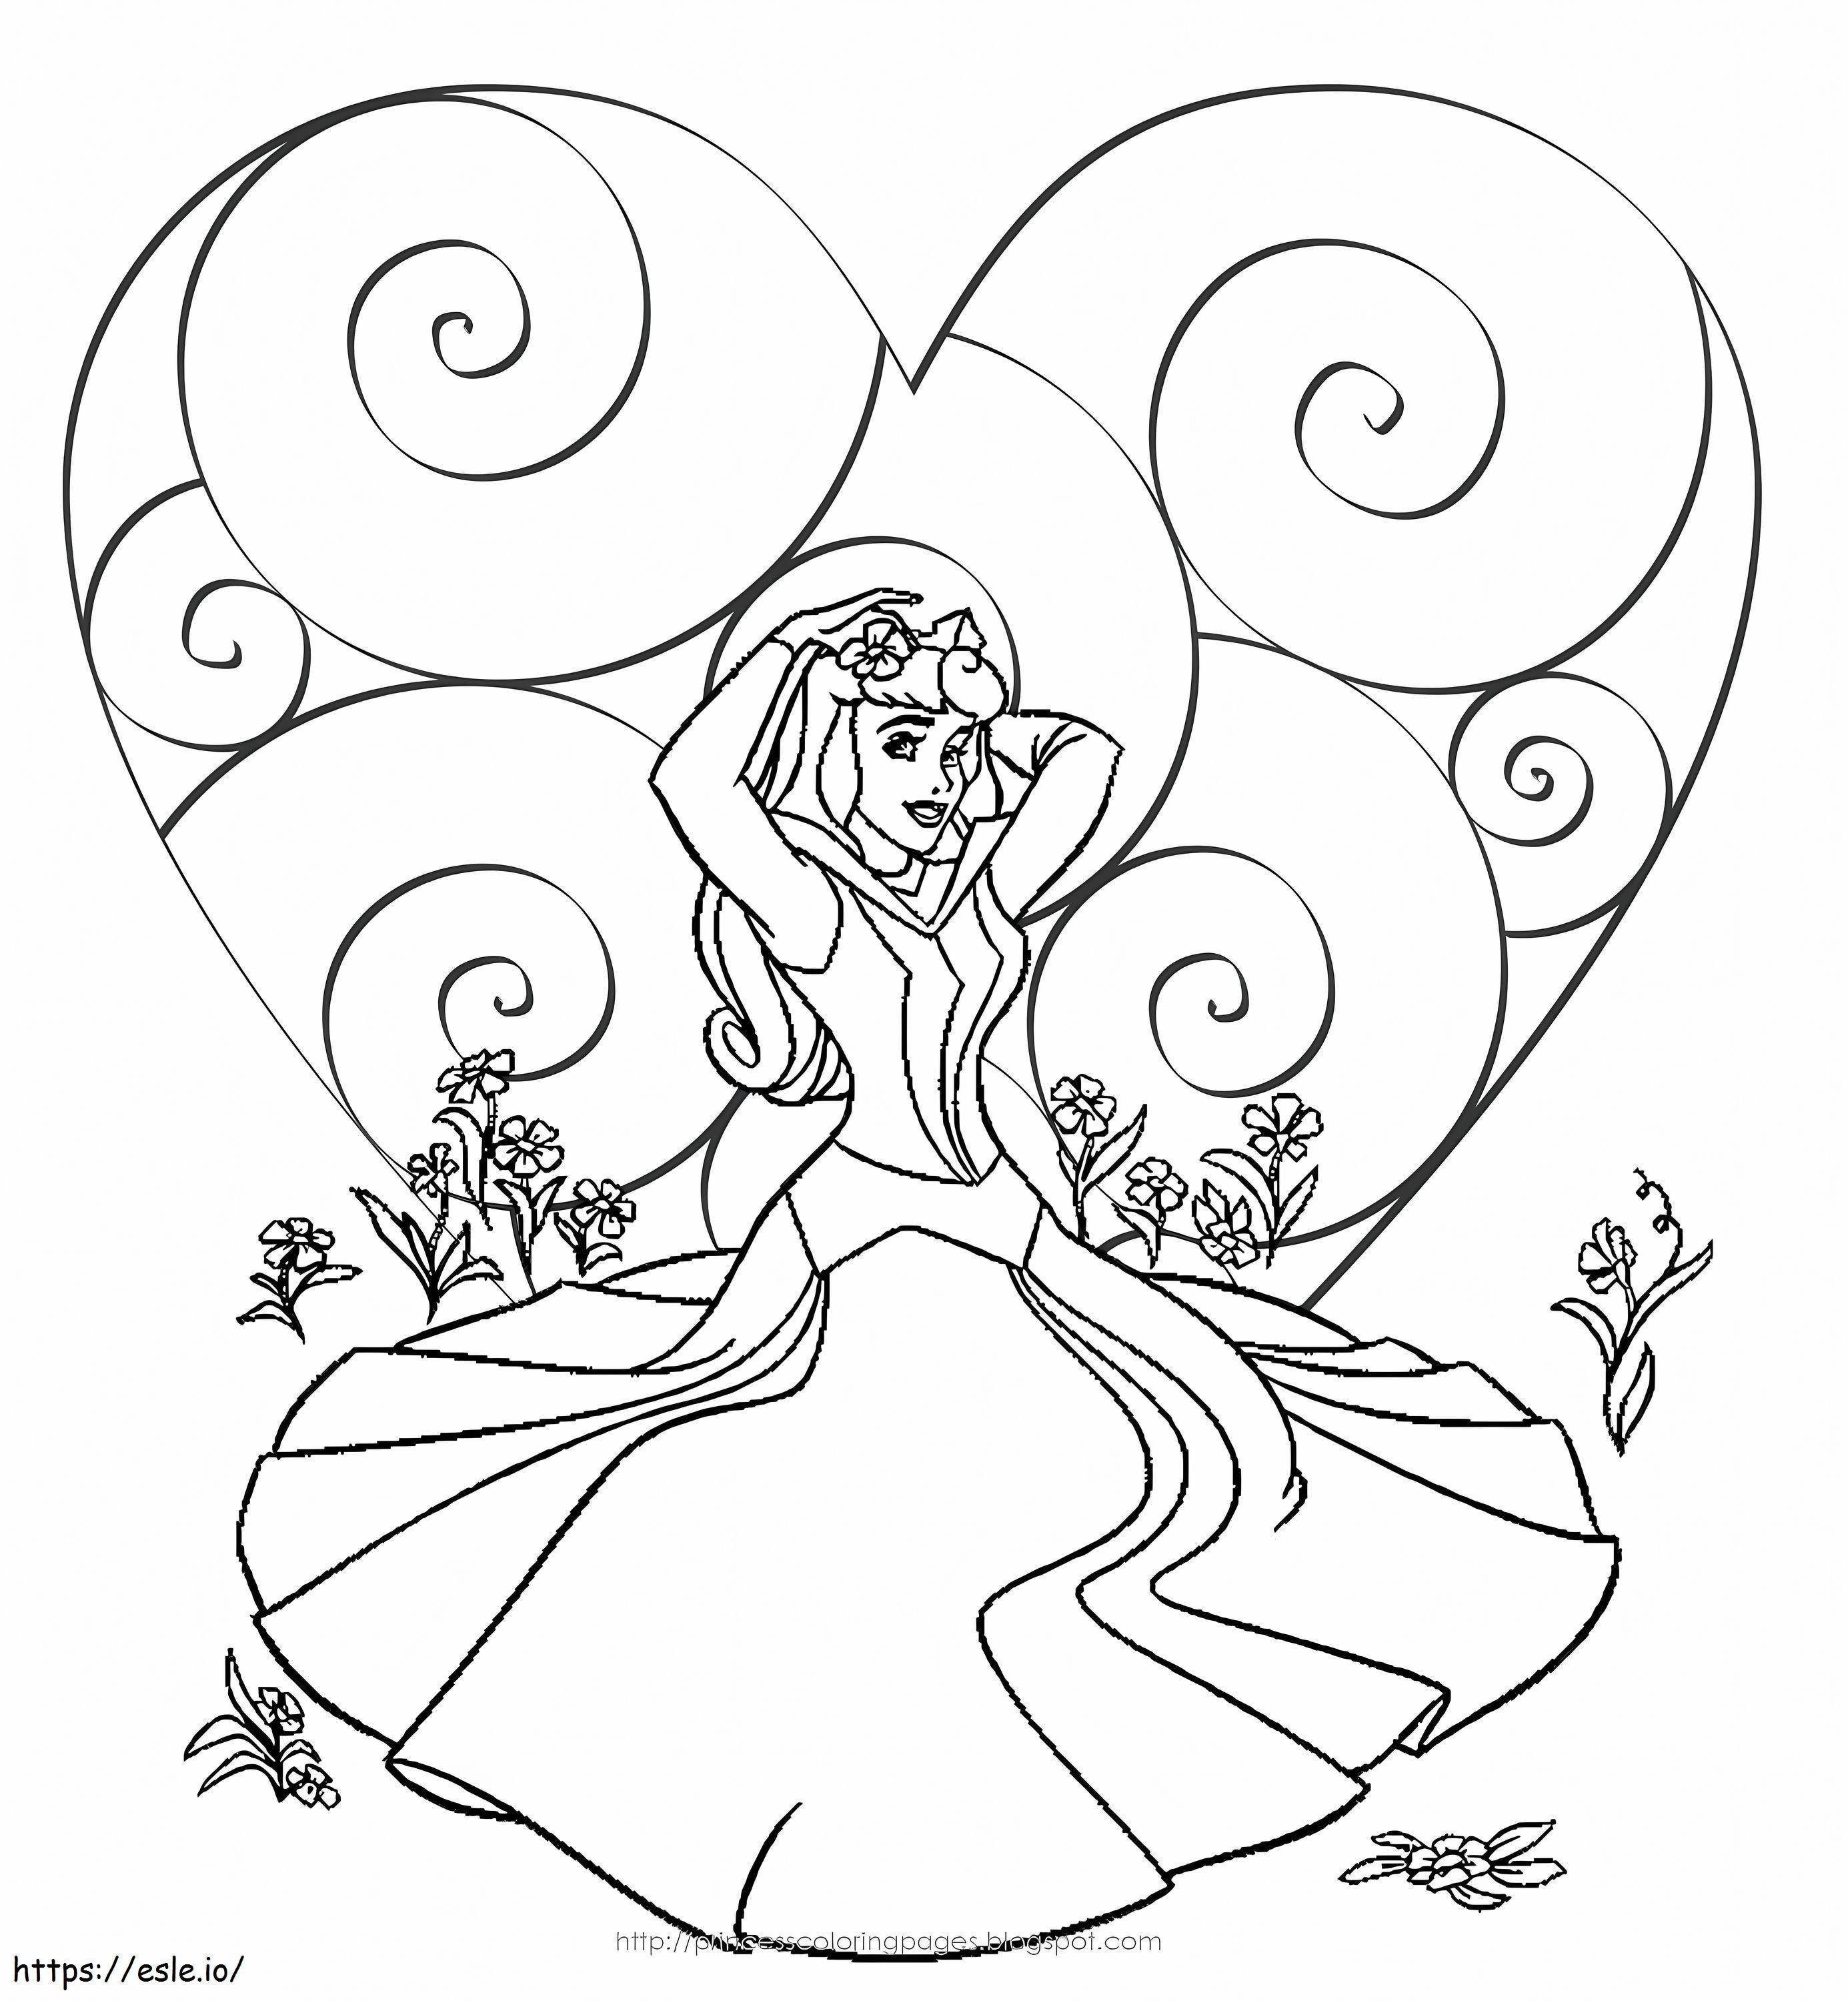 Coloriage Princesse Disney Saint-Valentin à imprimer dessin